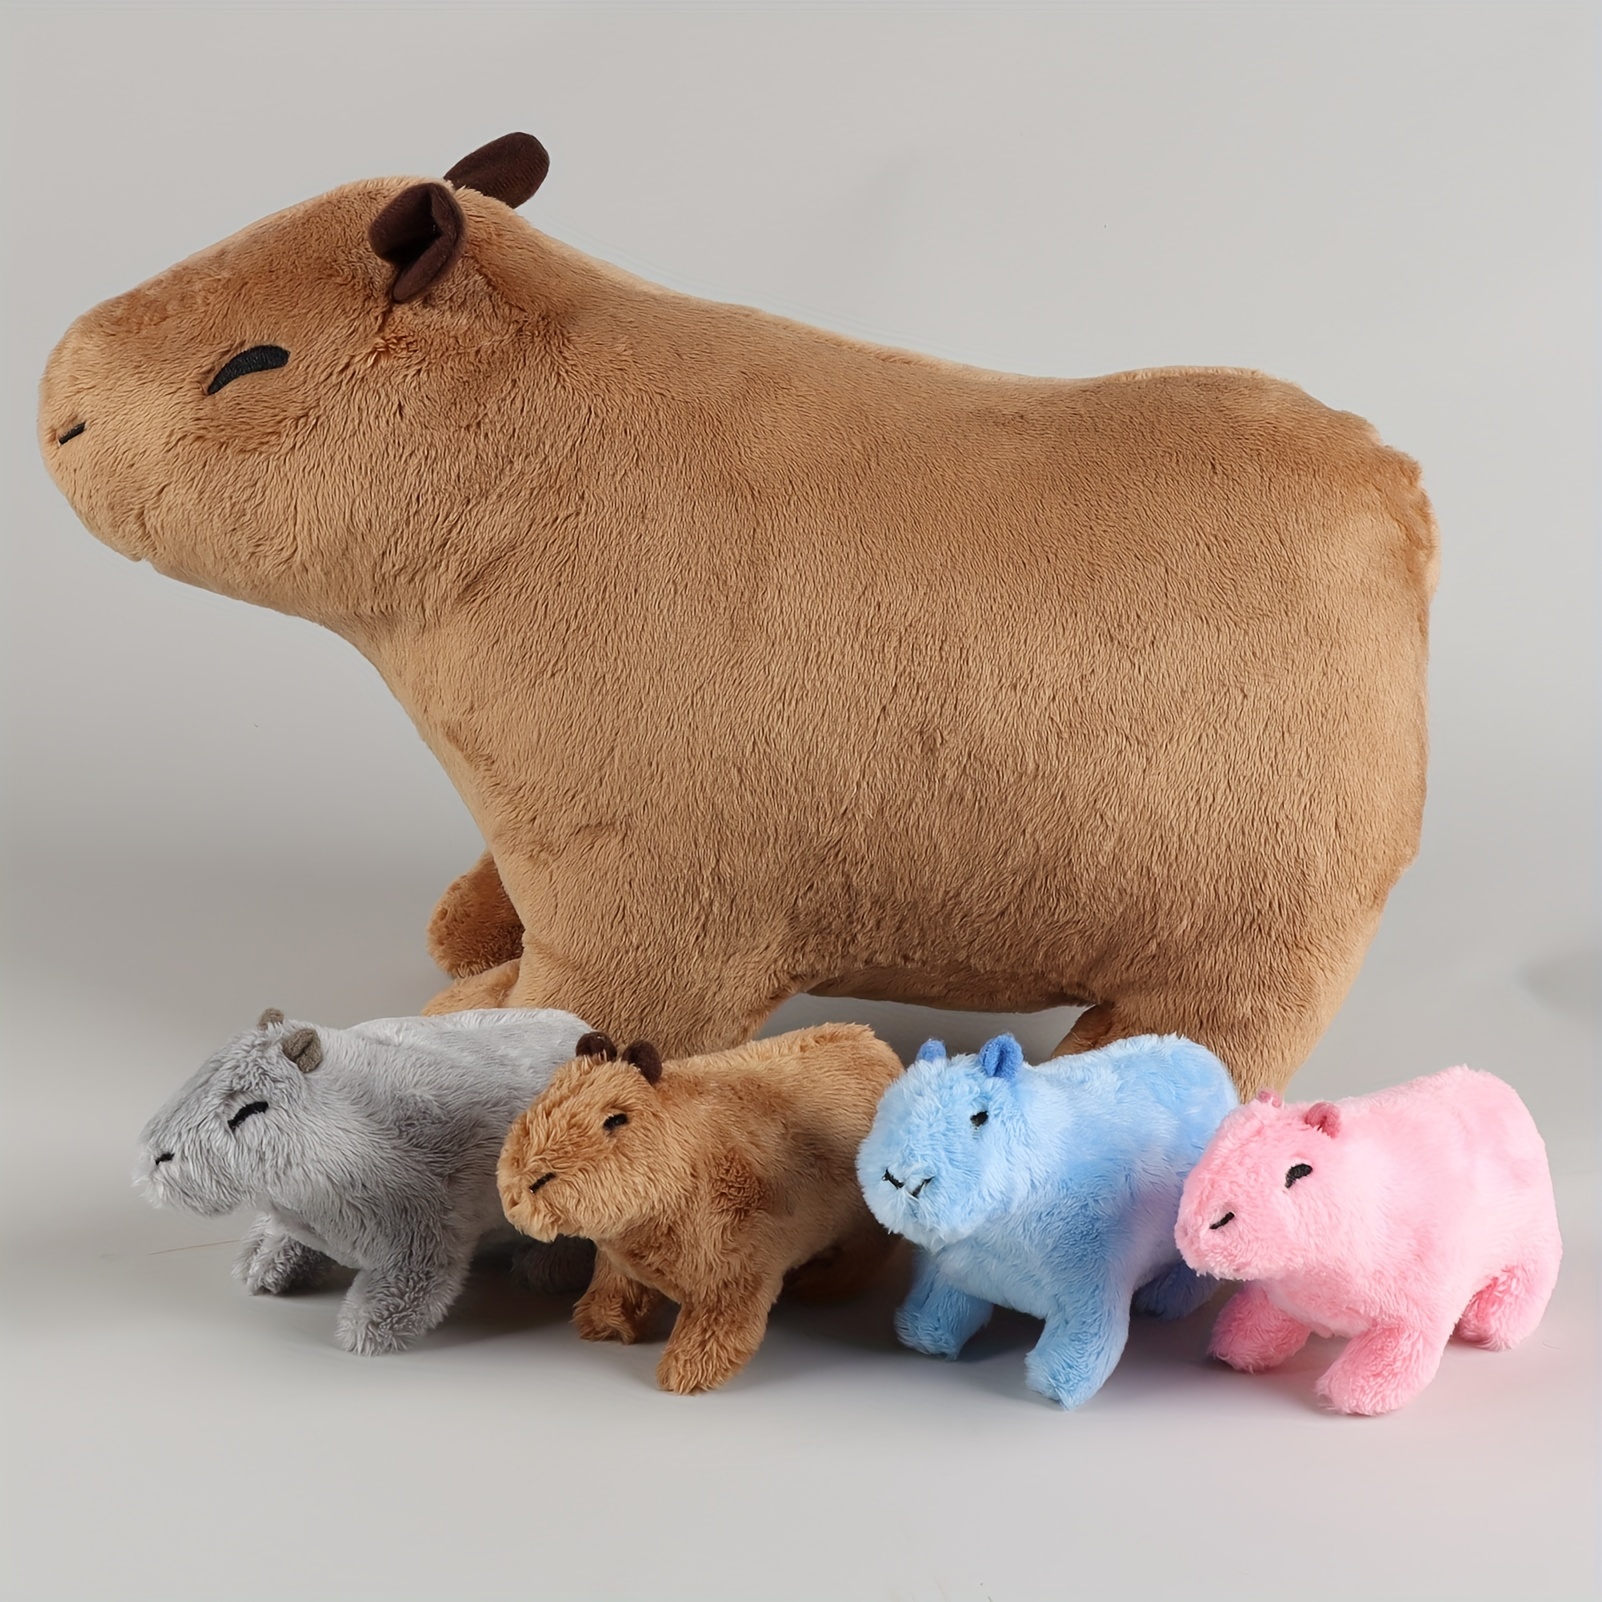 Dreafly Simulation Capybara-Plüschtier, niedliche  Tier-Capybara-Meerschweinchen-Puppen, realistisches Stofftier,  Heimdekorationsgeschenk, niedliche